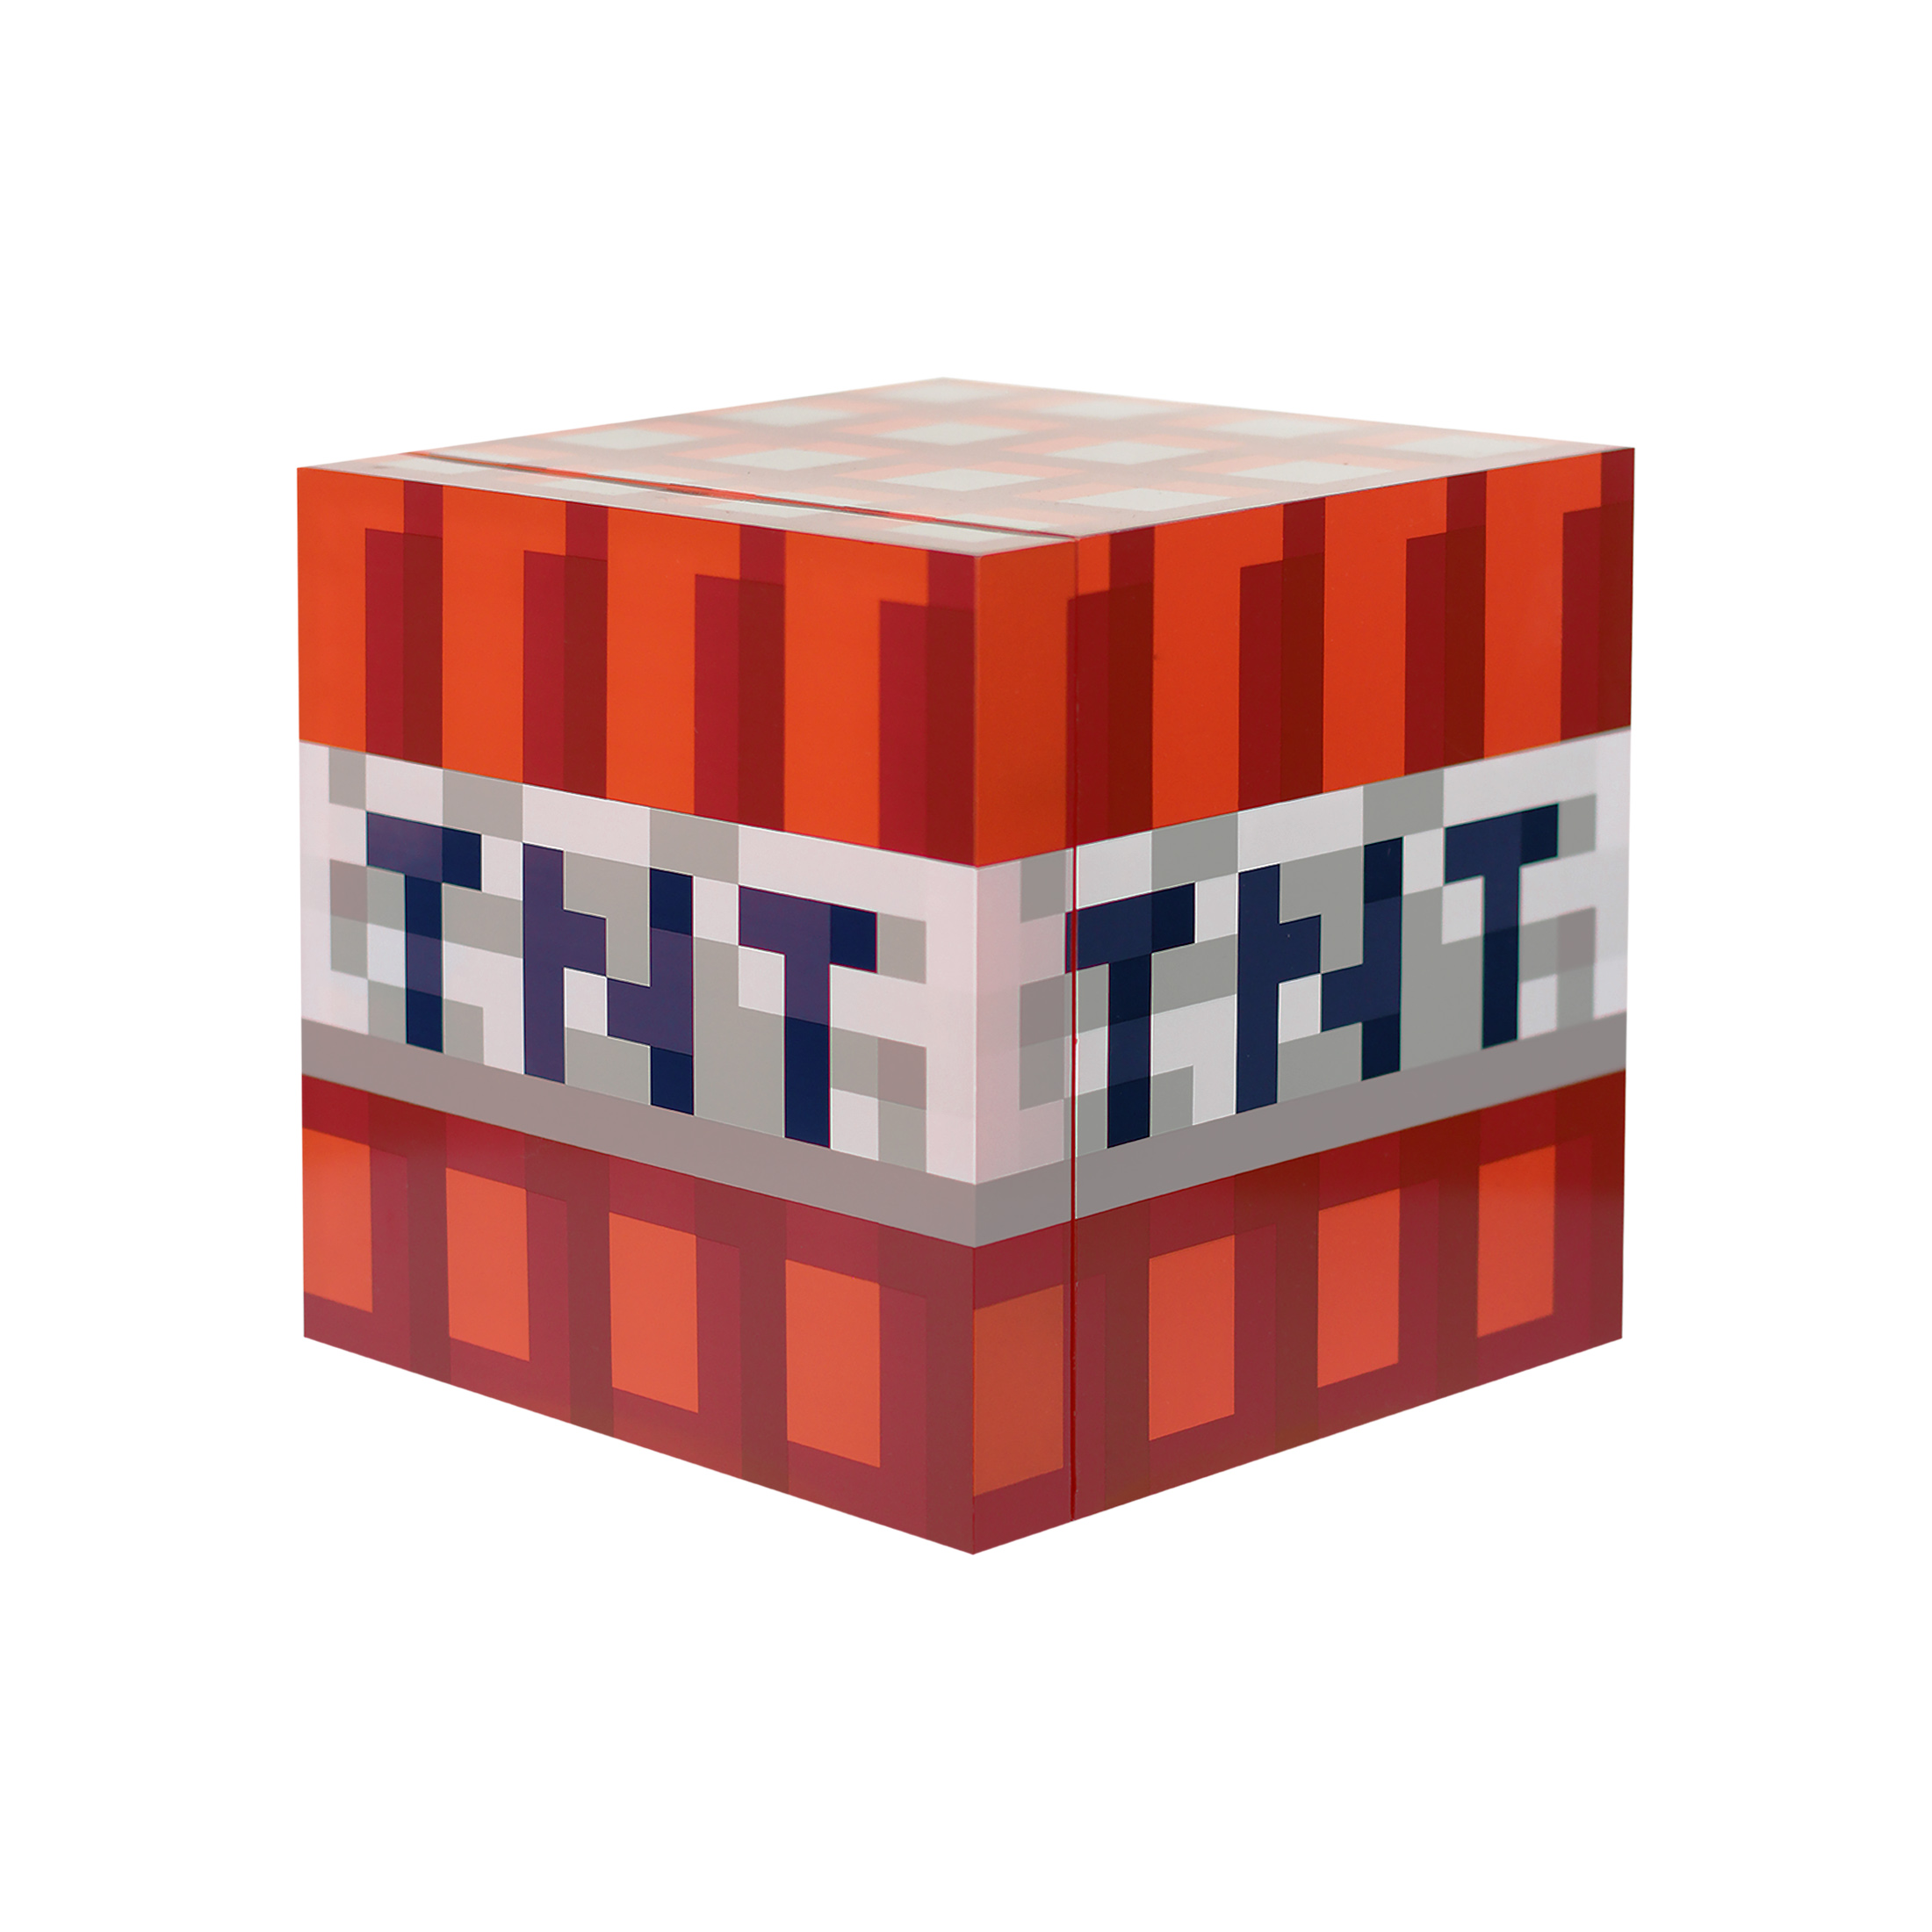  Minecraft Red TNT 9 Can Mini Fridge, 6.7L 1 Door